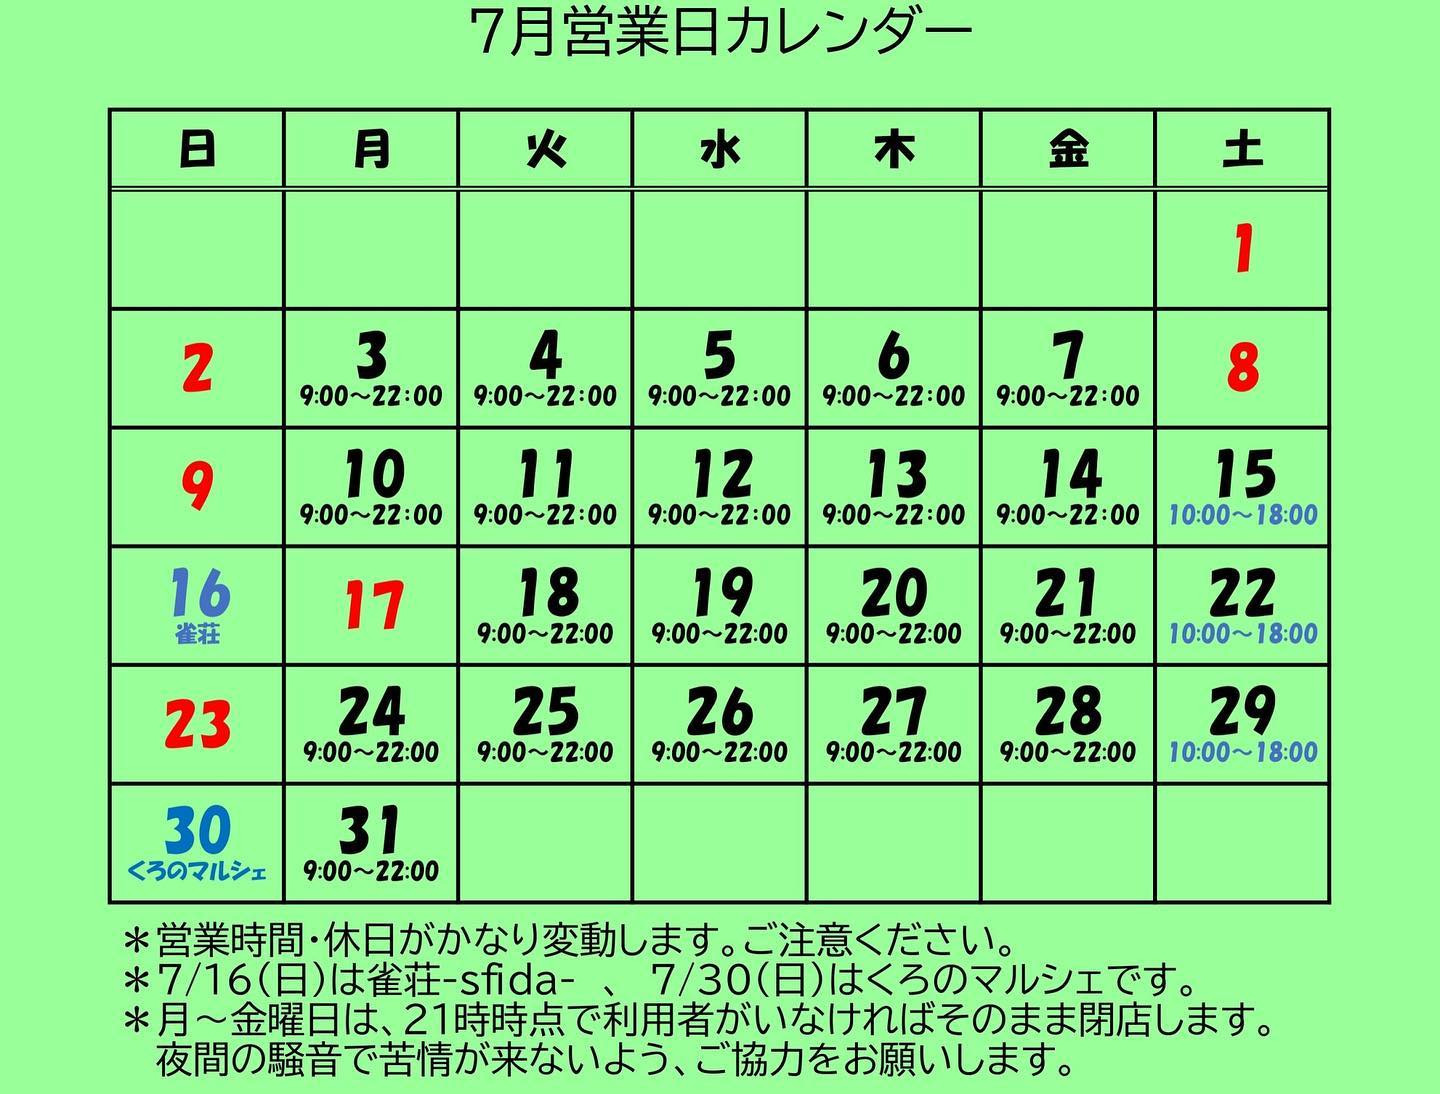 【7月営業日カレンダー】